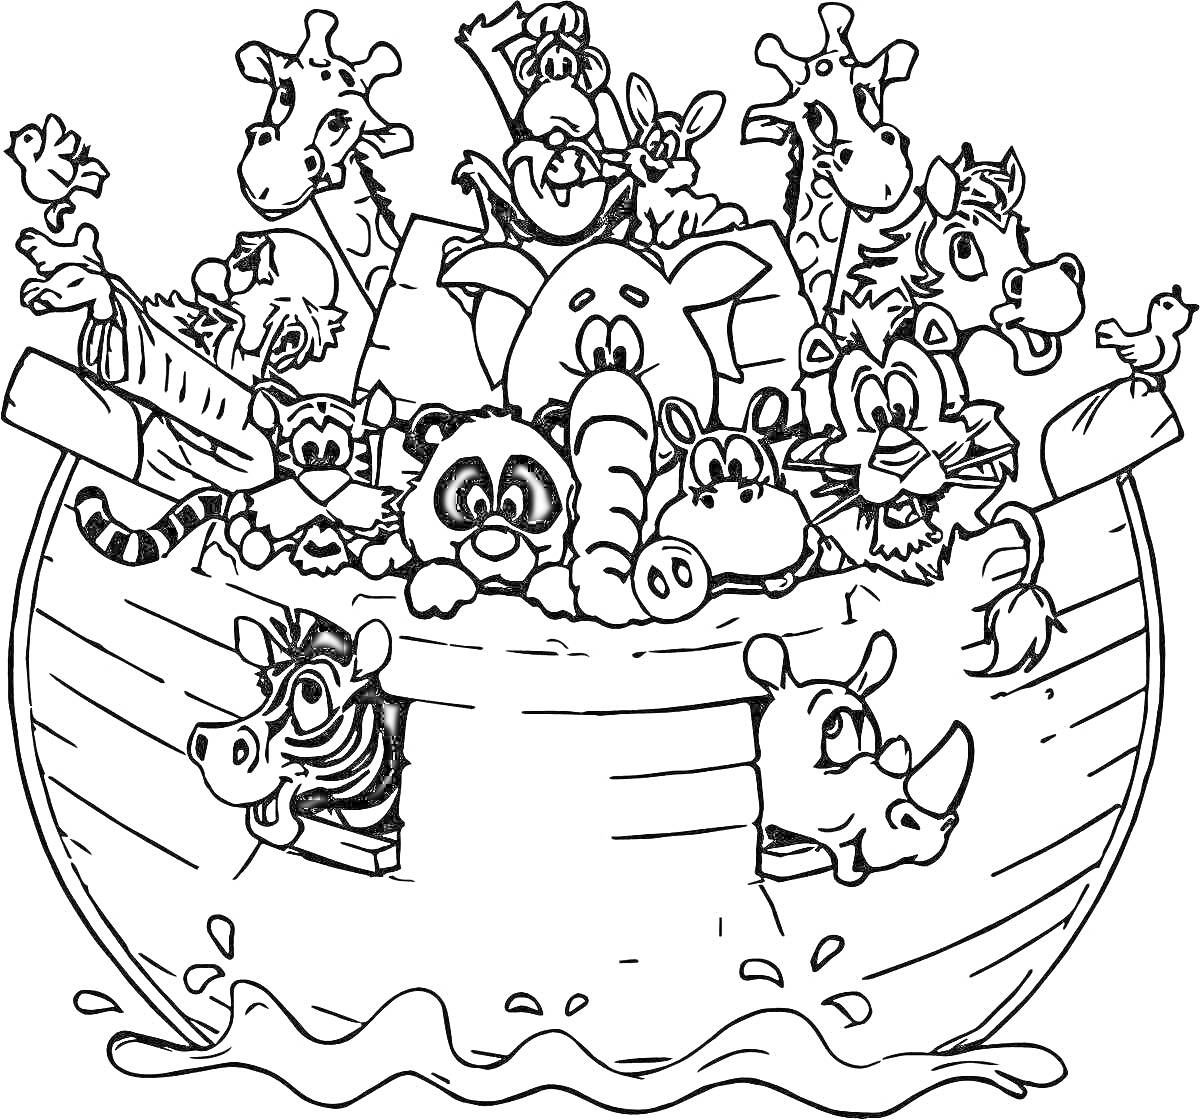 Раскраска Ноев ковчег с животными, включая жирафов, зебру, носорога, слона, тигра, панду, обезьяну, льва, бегемота, свинью, сову, барана и птиц